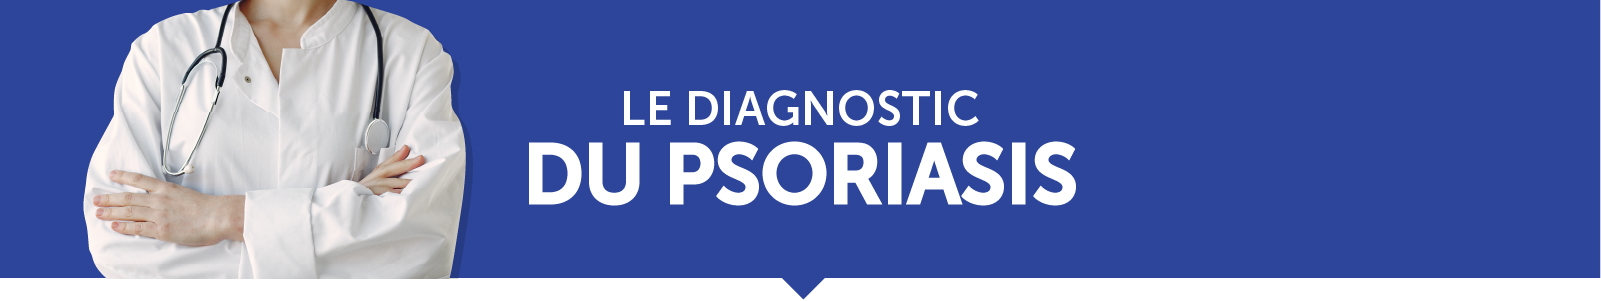 Le diagnostic du psoriasis